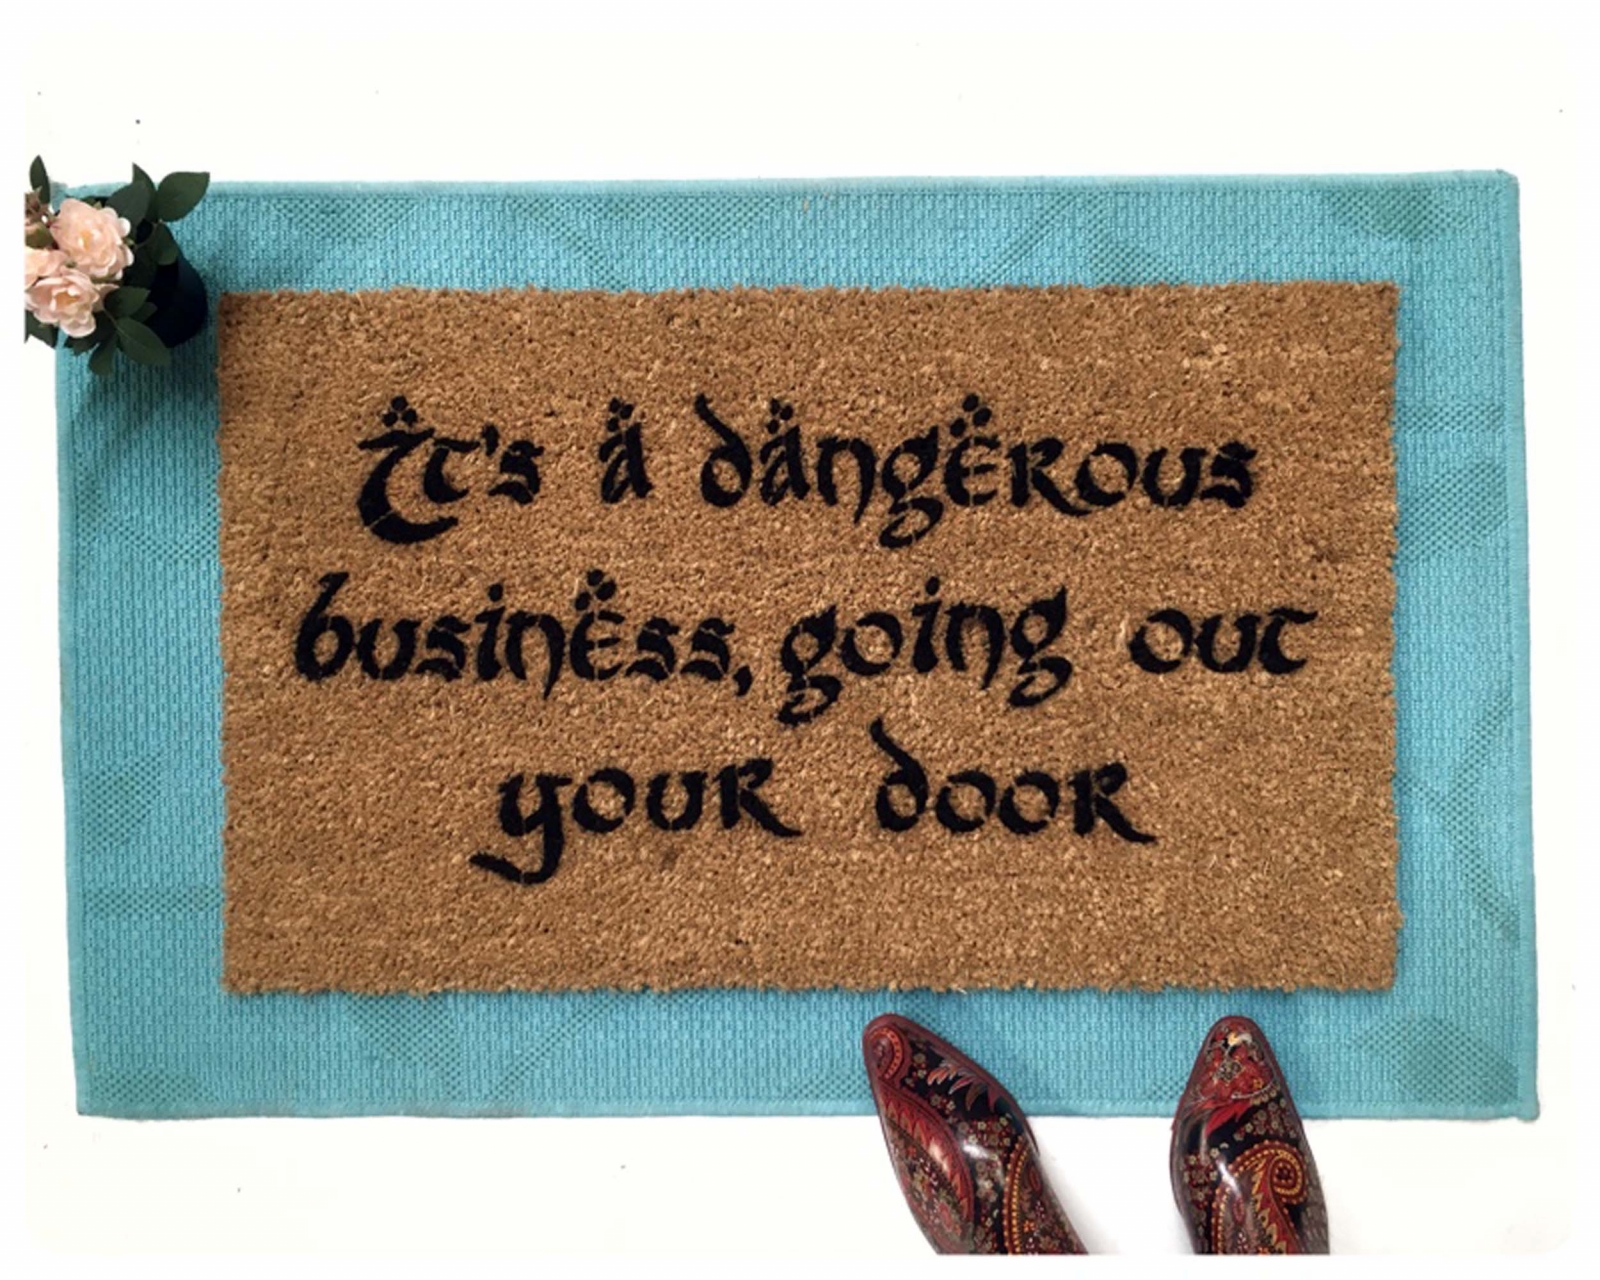 Tolkien quote It's dangerous business going out your door mat | DAMN GOOD  DOORMATS